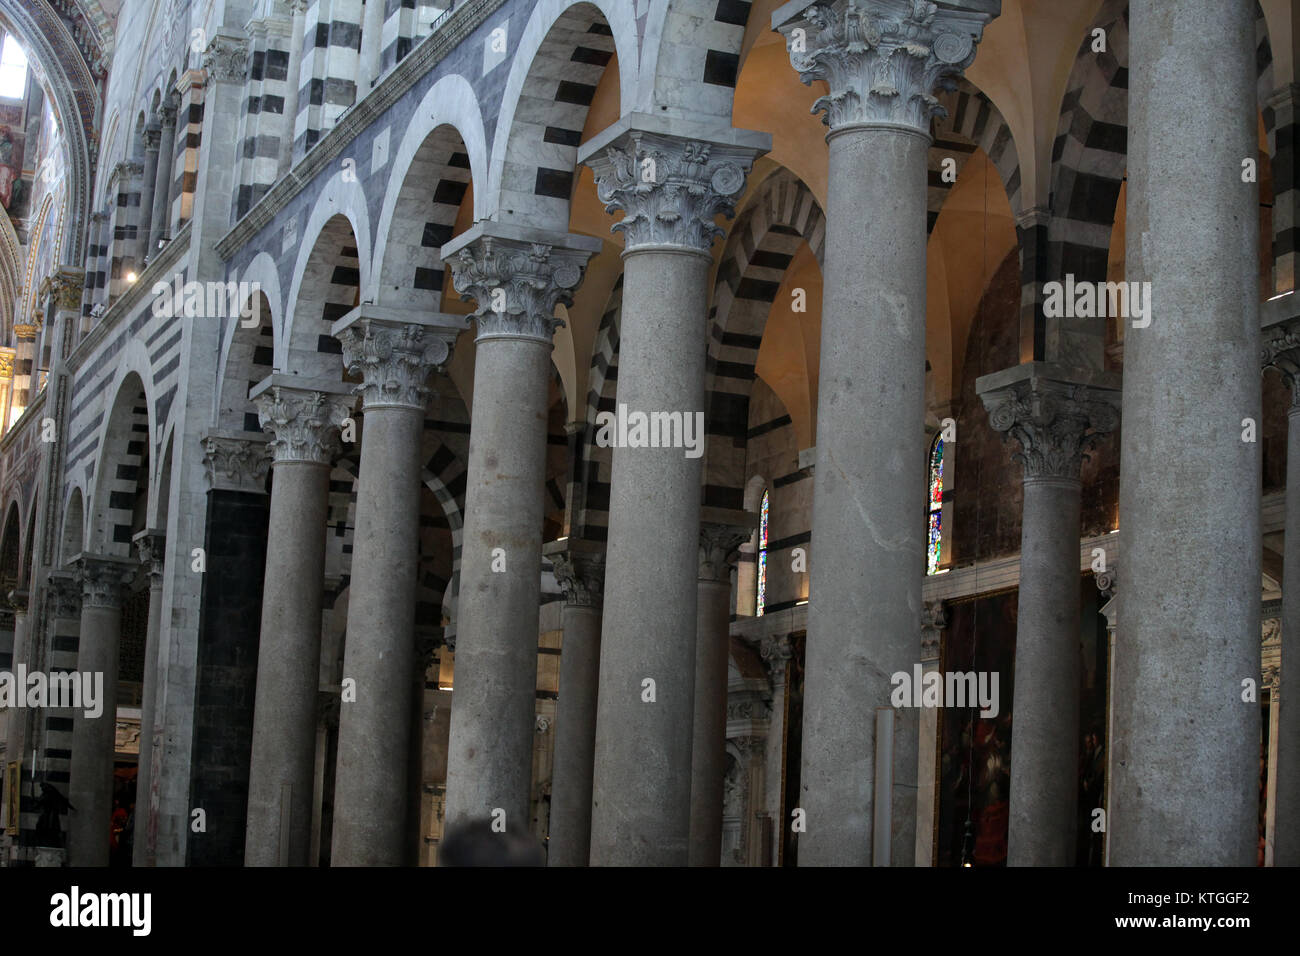 Duomo interior - Pisa, Tuscany Italy Stock Photo